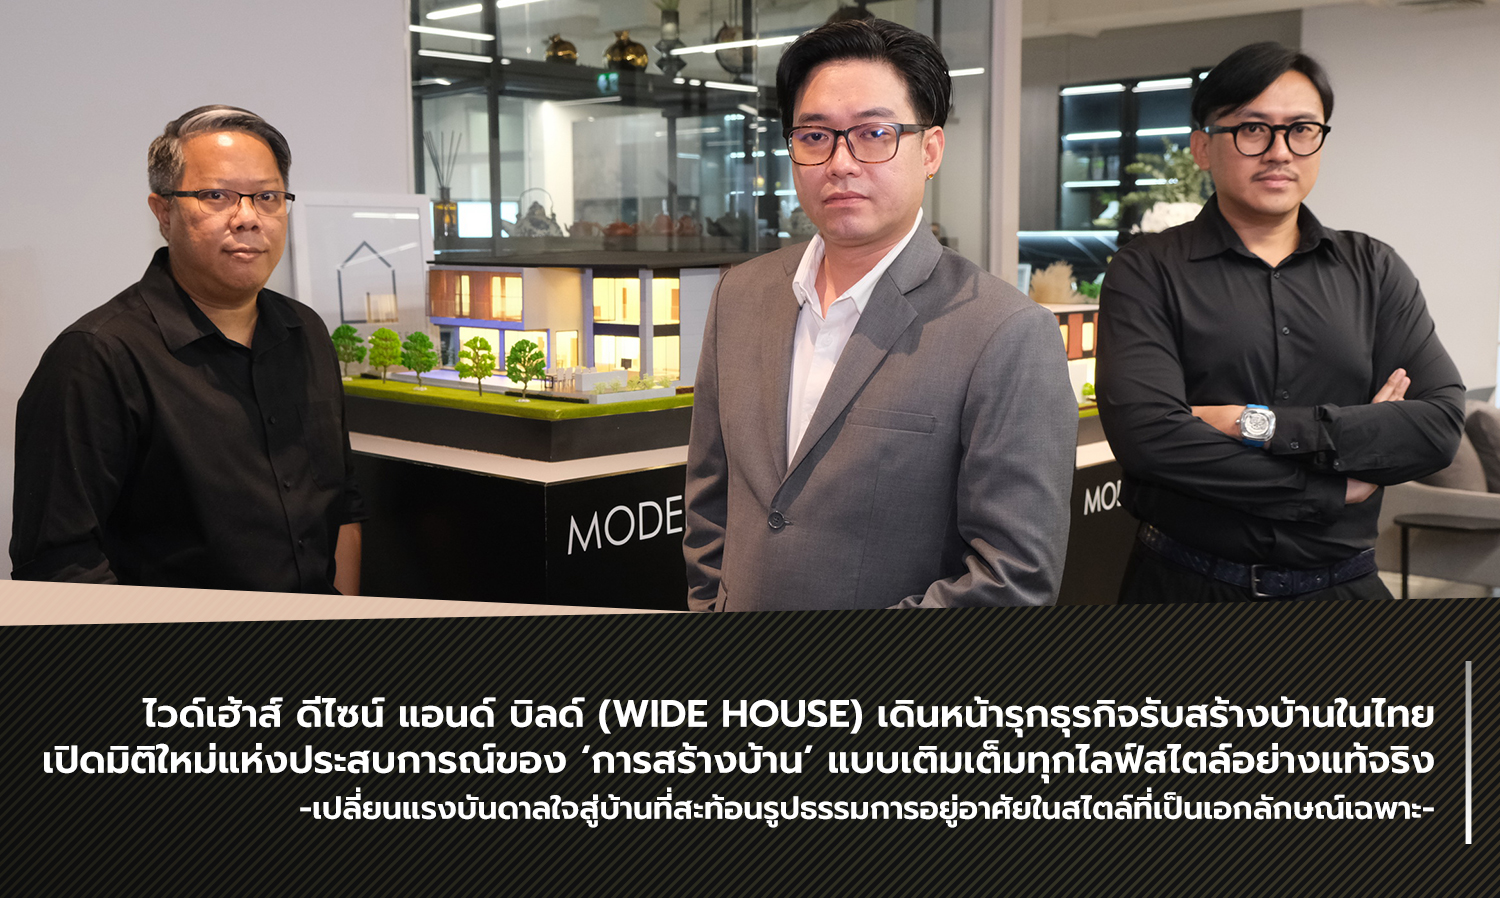 ไวด์เฮ้าส์ ดีไซน์ แอนด์ บิลด์ (WIDE HOUSE) เดินหน้ารุกธุรกิจรับสร้างบ้านในไทย  เปิดมิติใหม่แห่งประสบการณ์ของ ‘การสร้างบ้าน’ แบบเติมเต็มทุกไลฟ์สไตล์อย่างแท้จริง เปลี่ยนแรงบันดาลใจสู่บ้านที่สะท้อนรูปธรรมการอยู่อาศัยในสไตล์ที่เป็นเอกลักษณ์เฉพาะ